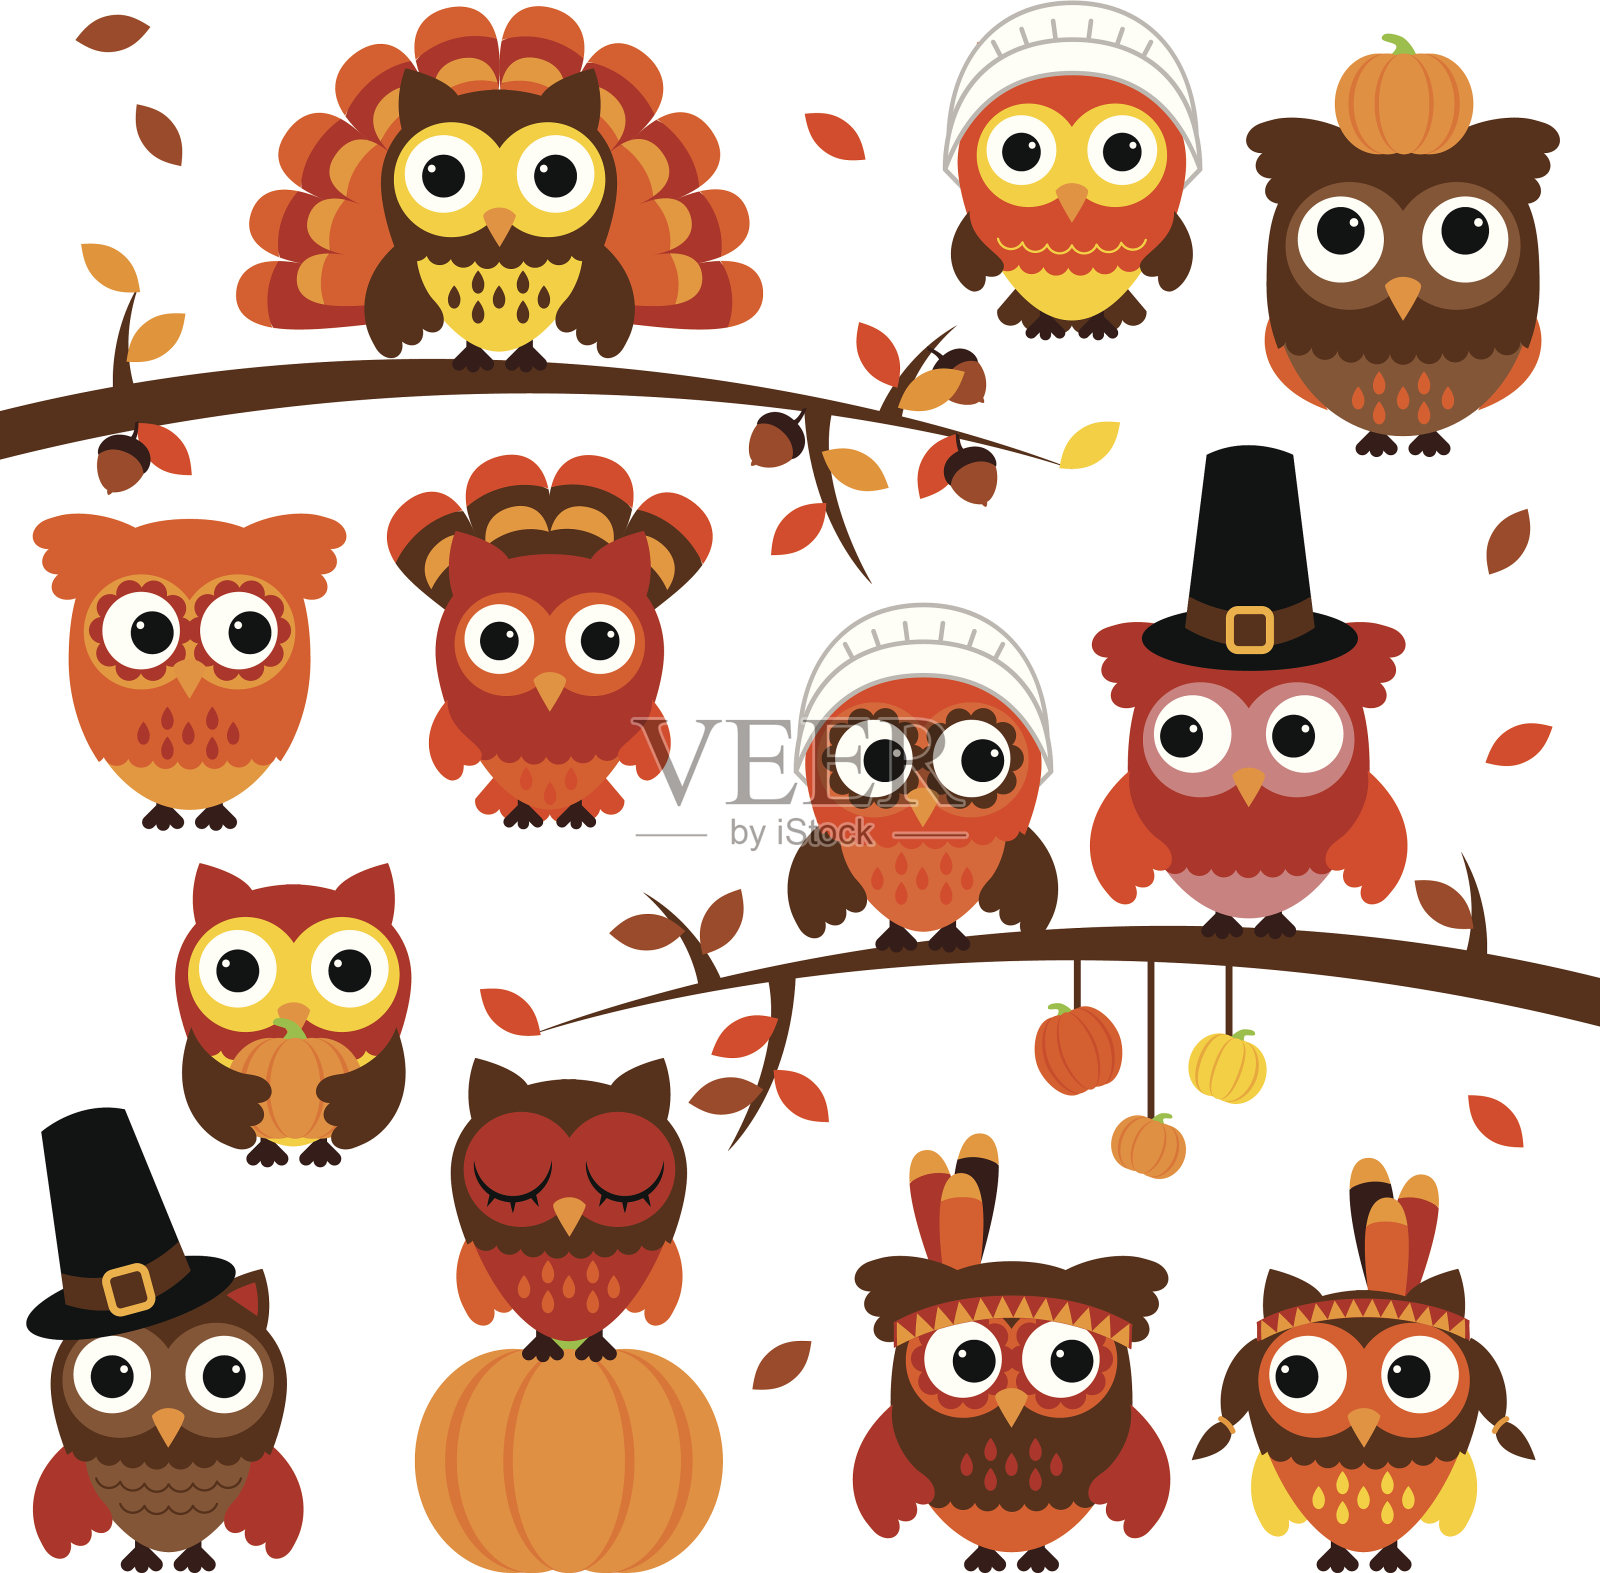 感恩节和秋季主题向量猫头鹰系列与分支插画图片素材